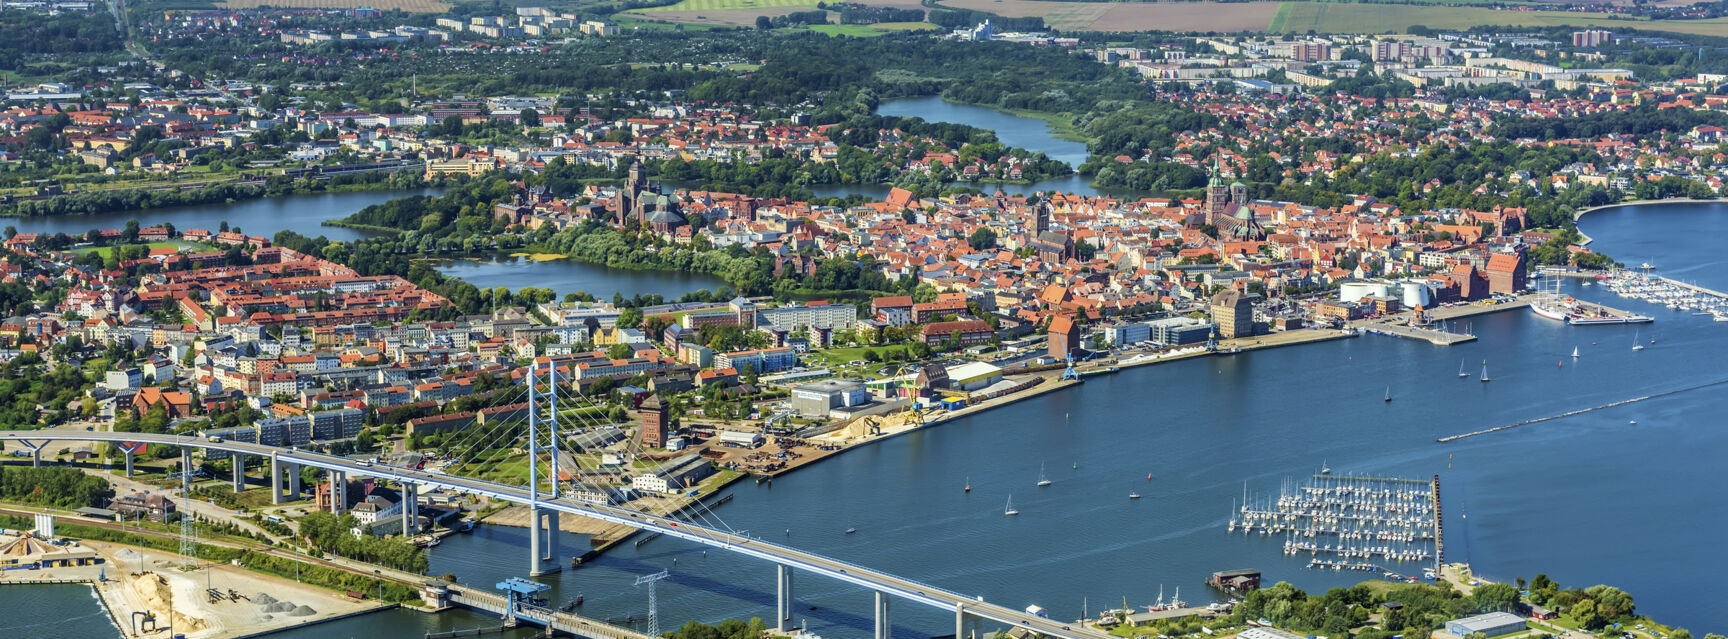 Stralsund from above